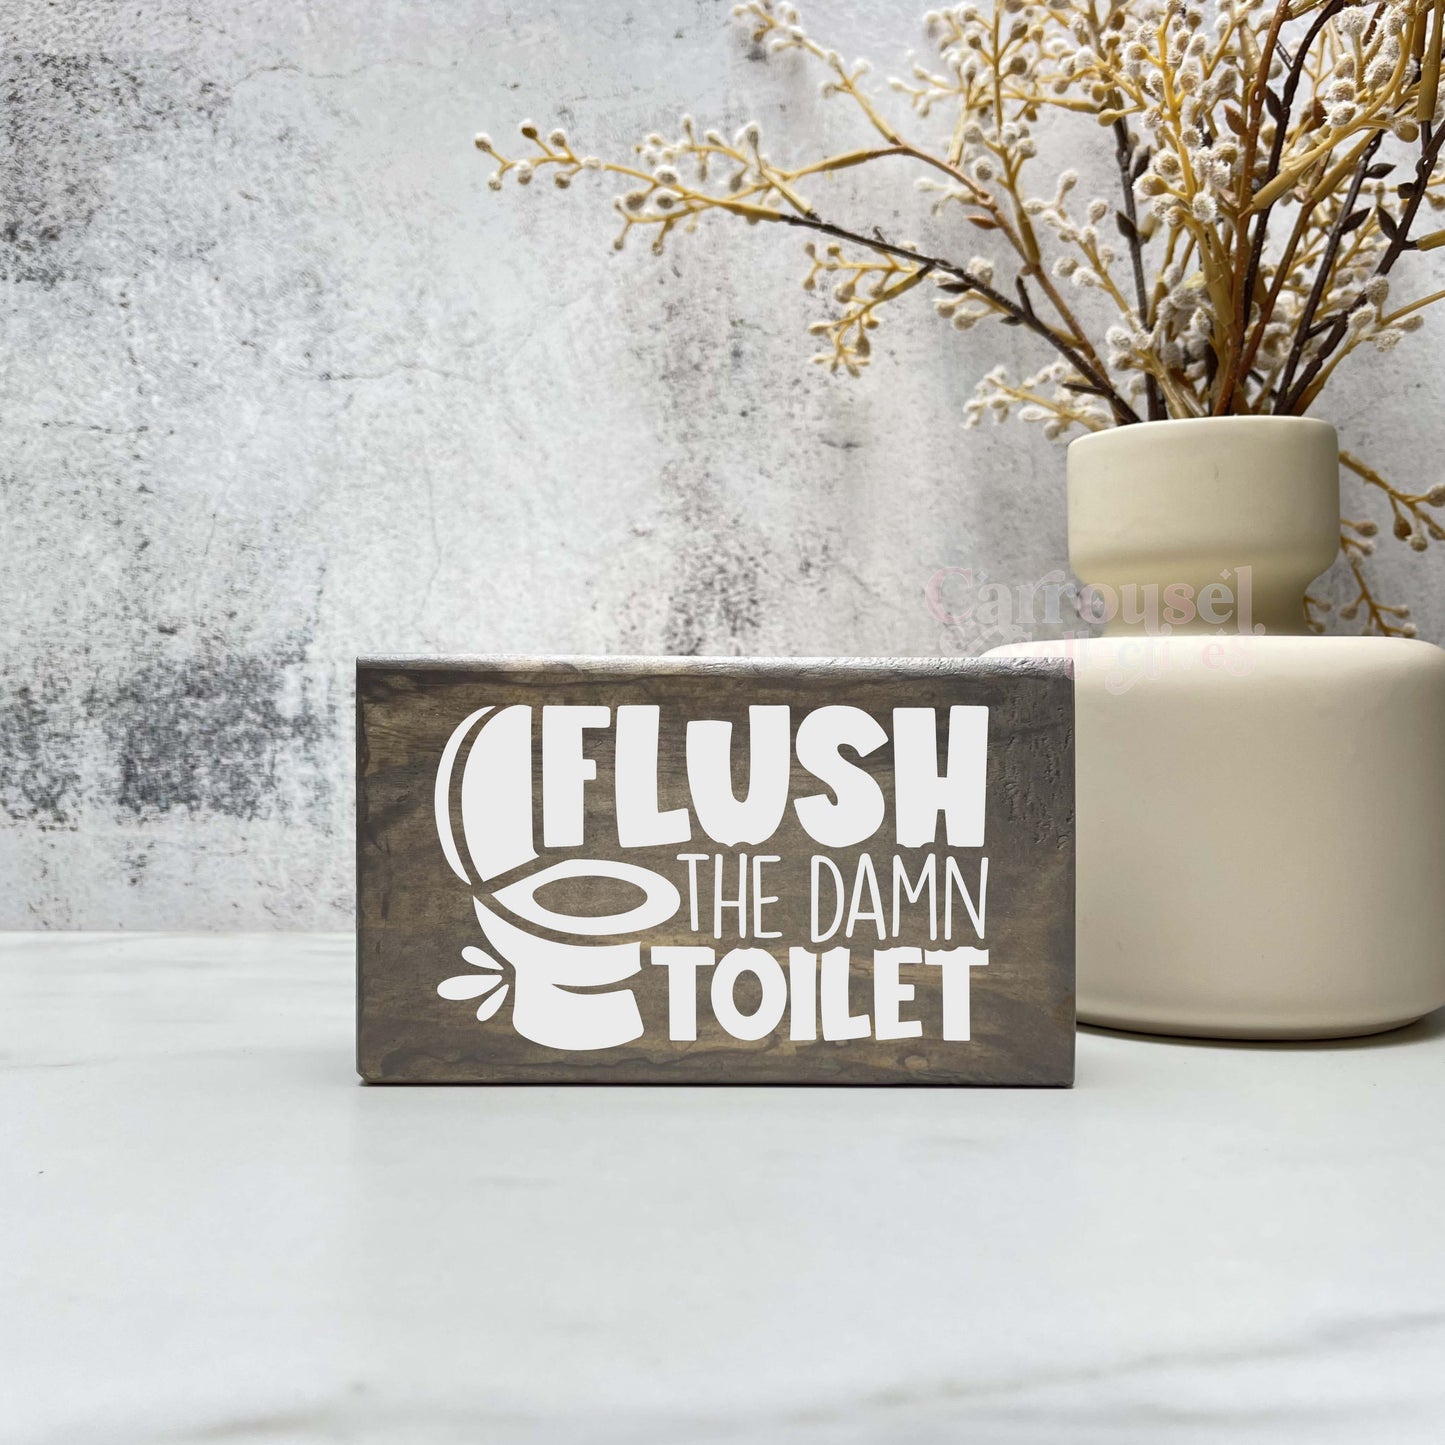 Flush the toilet, Bathroom Wood Sign, Bathroom Decor, Home Decor